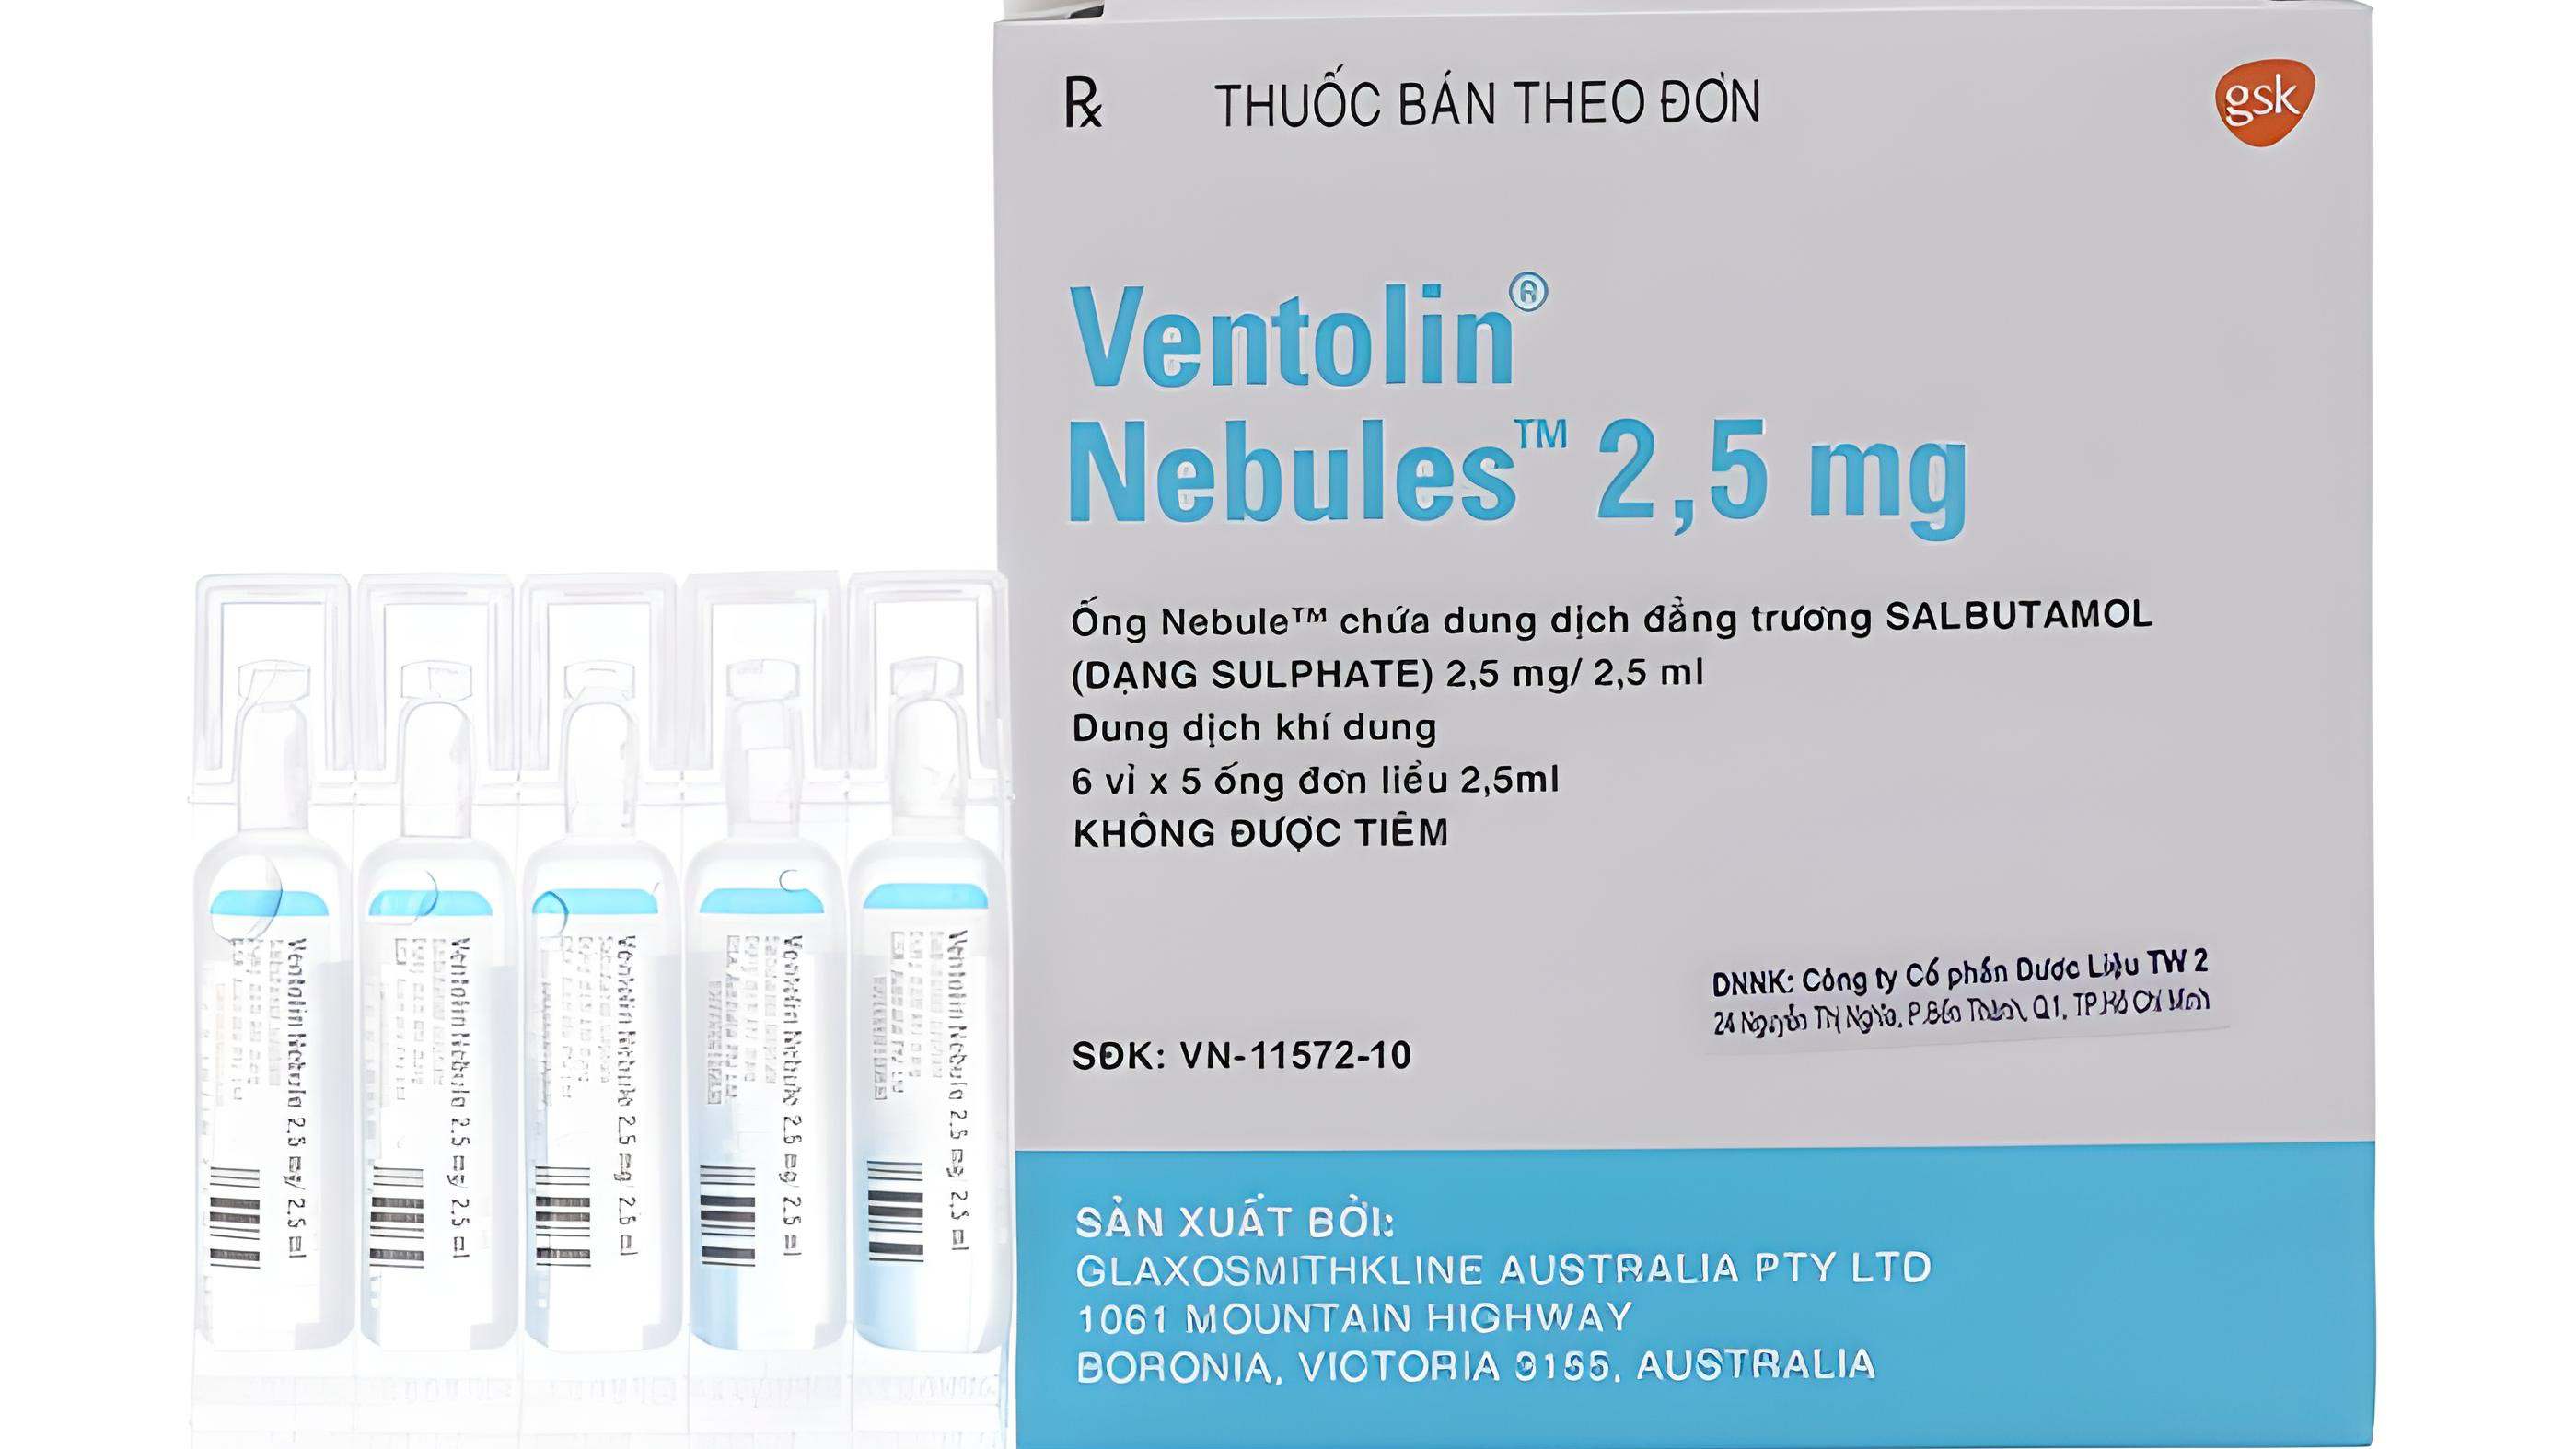 Thuốc Ventolin Nebules 2.5mg có tác dụng giãn phế quản như thế nào?
